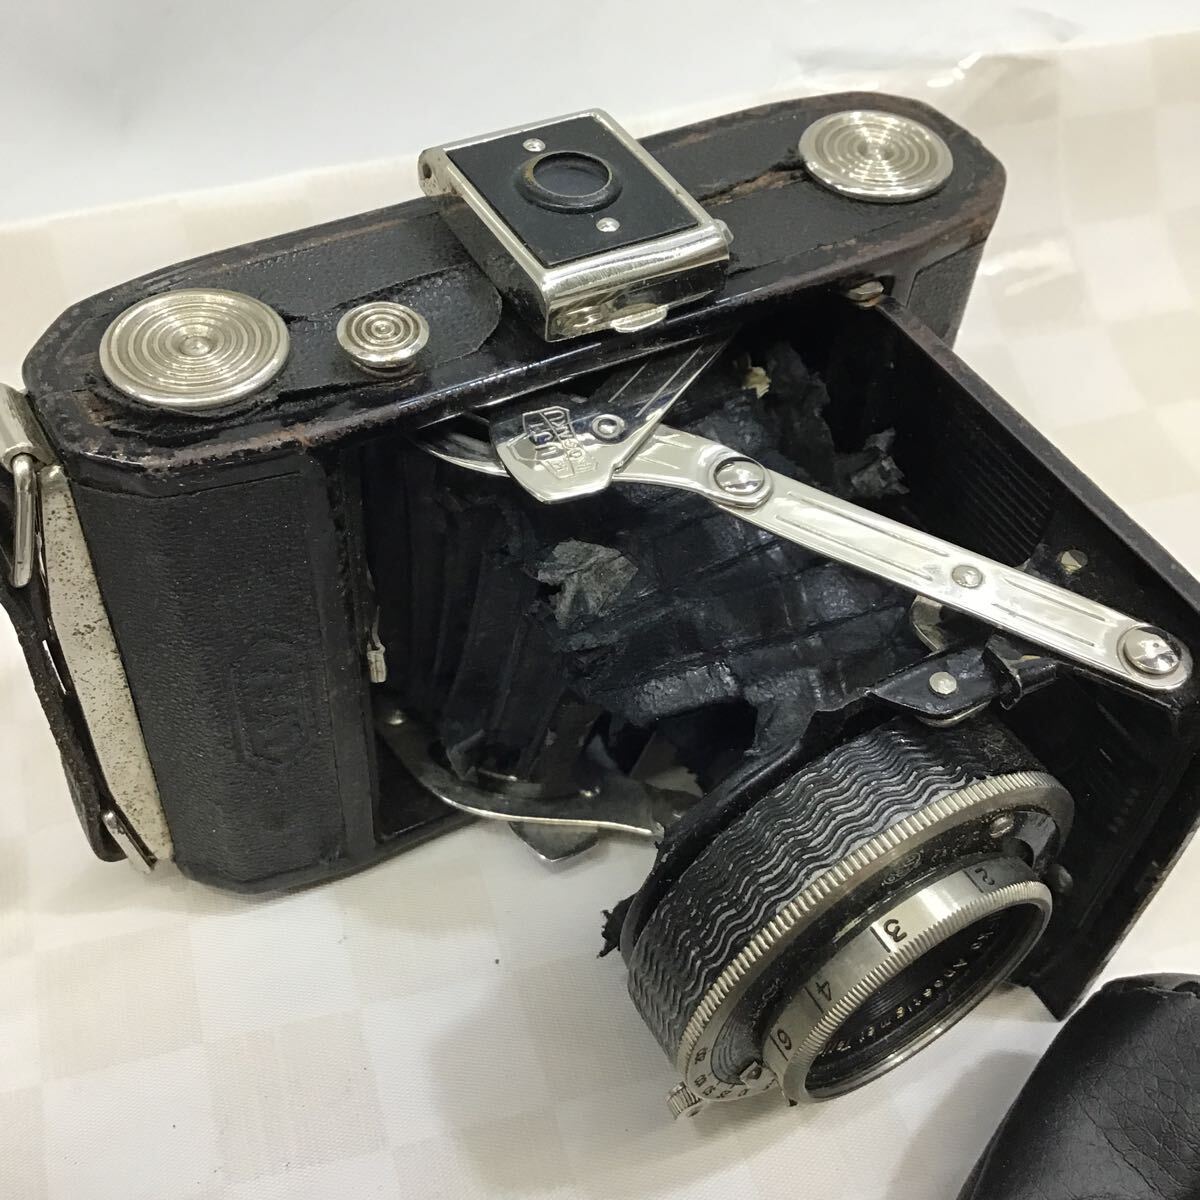 (.)[ включение в покупку возможно ] пленочный фотоаппарат видео камера цифровая камера retro камера Fuji ks фото Vision Nikon PENTAX SONY RICOH Panasonic CABIN